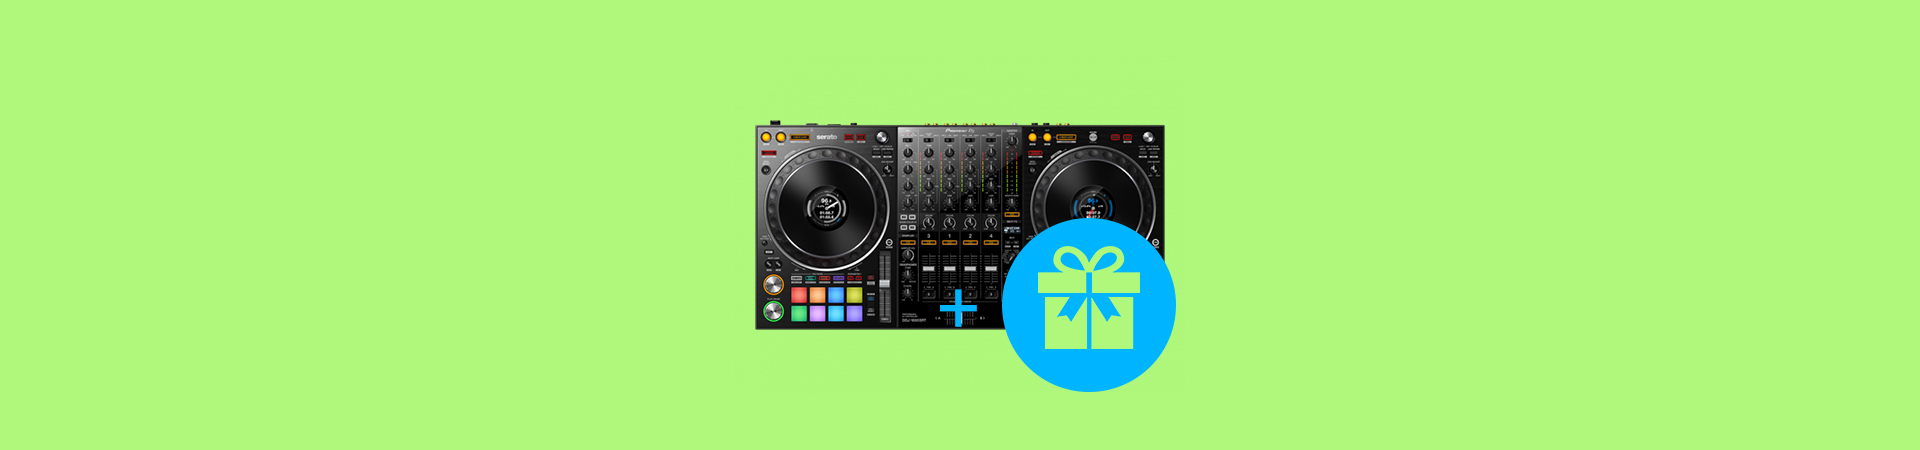 Подарки при покупке DJ-контроллеров